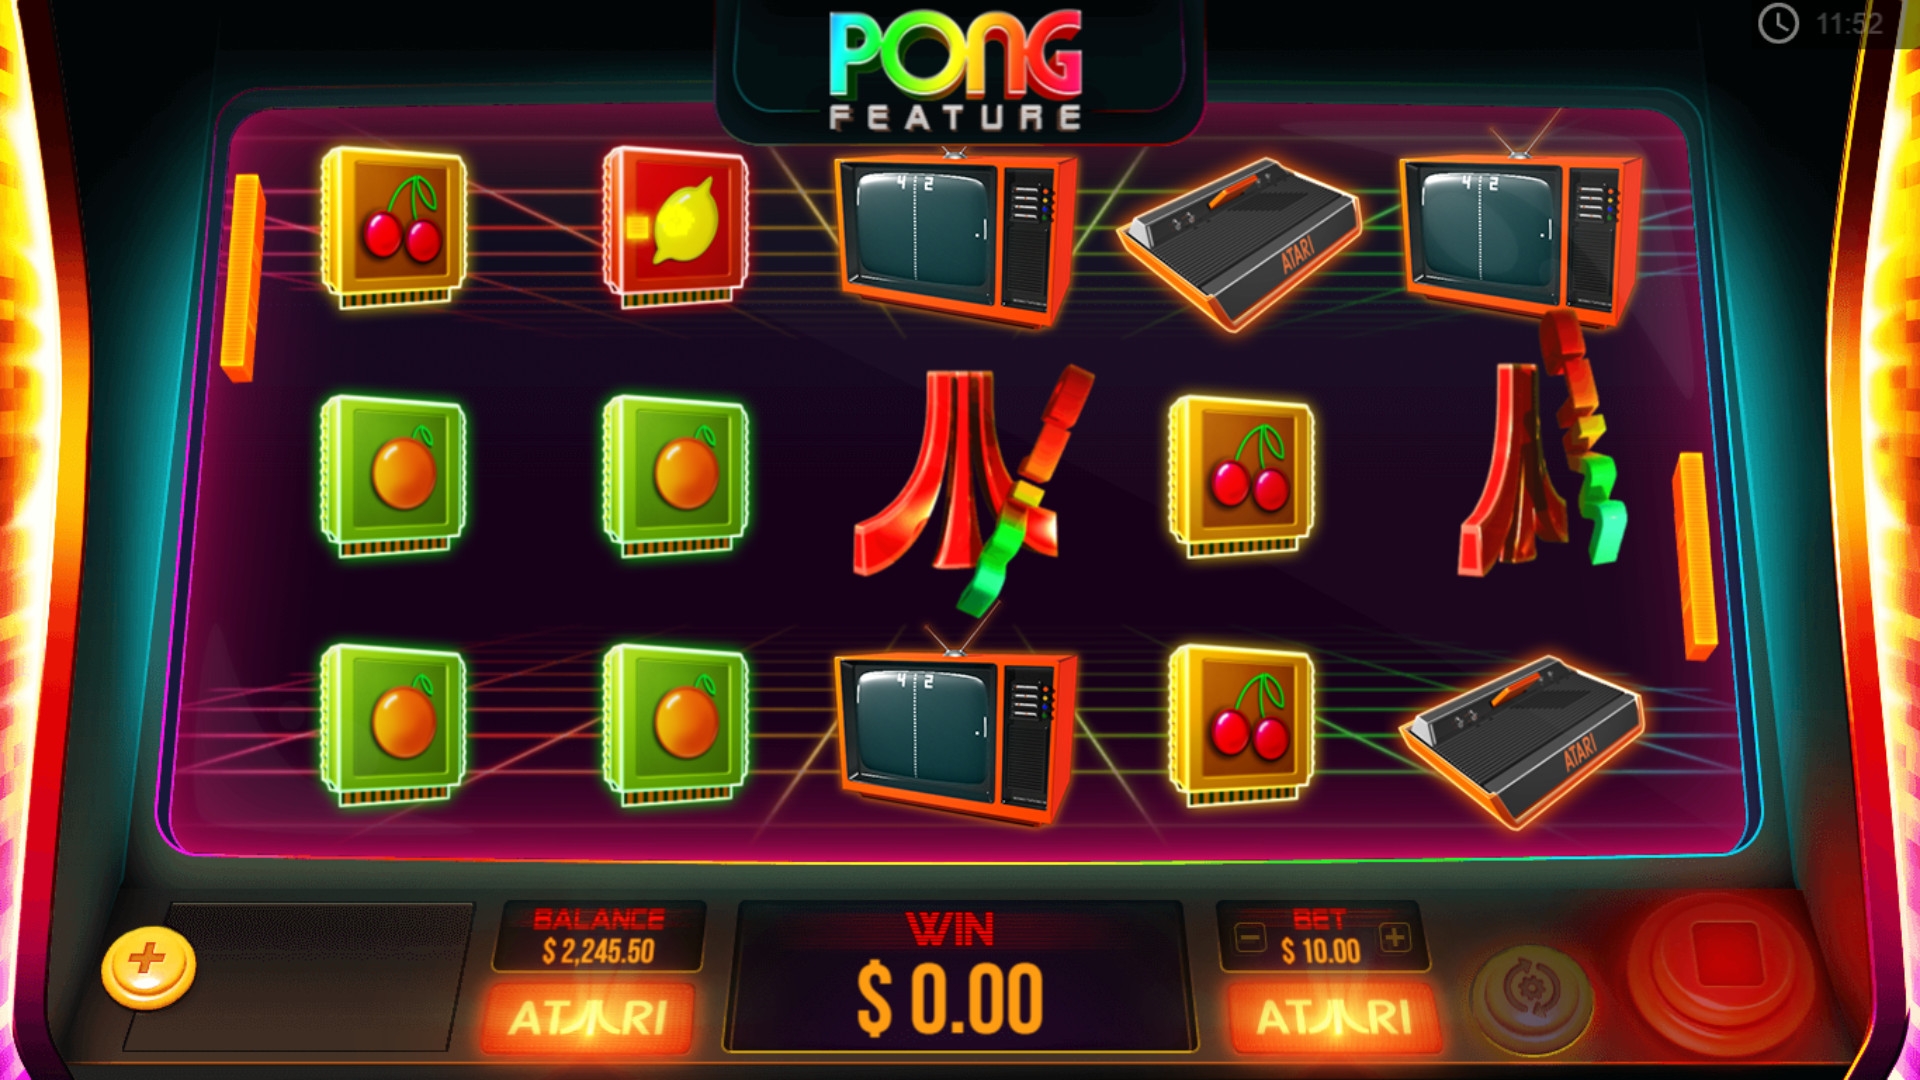 Atari Pong (Atari Pong) from category Slots